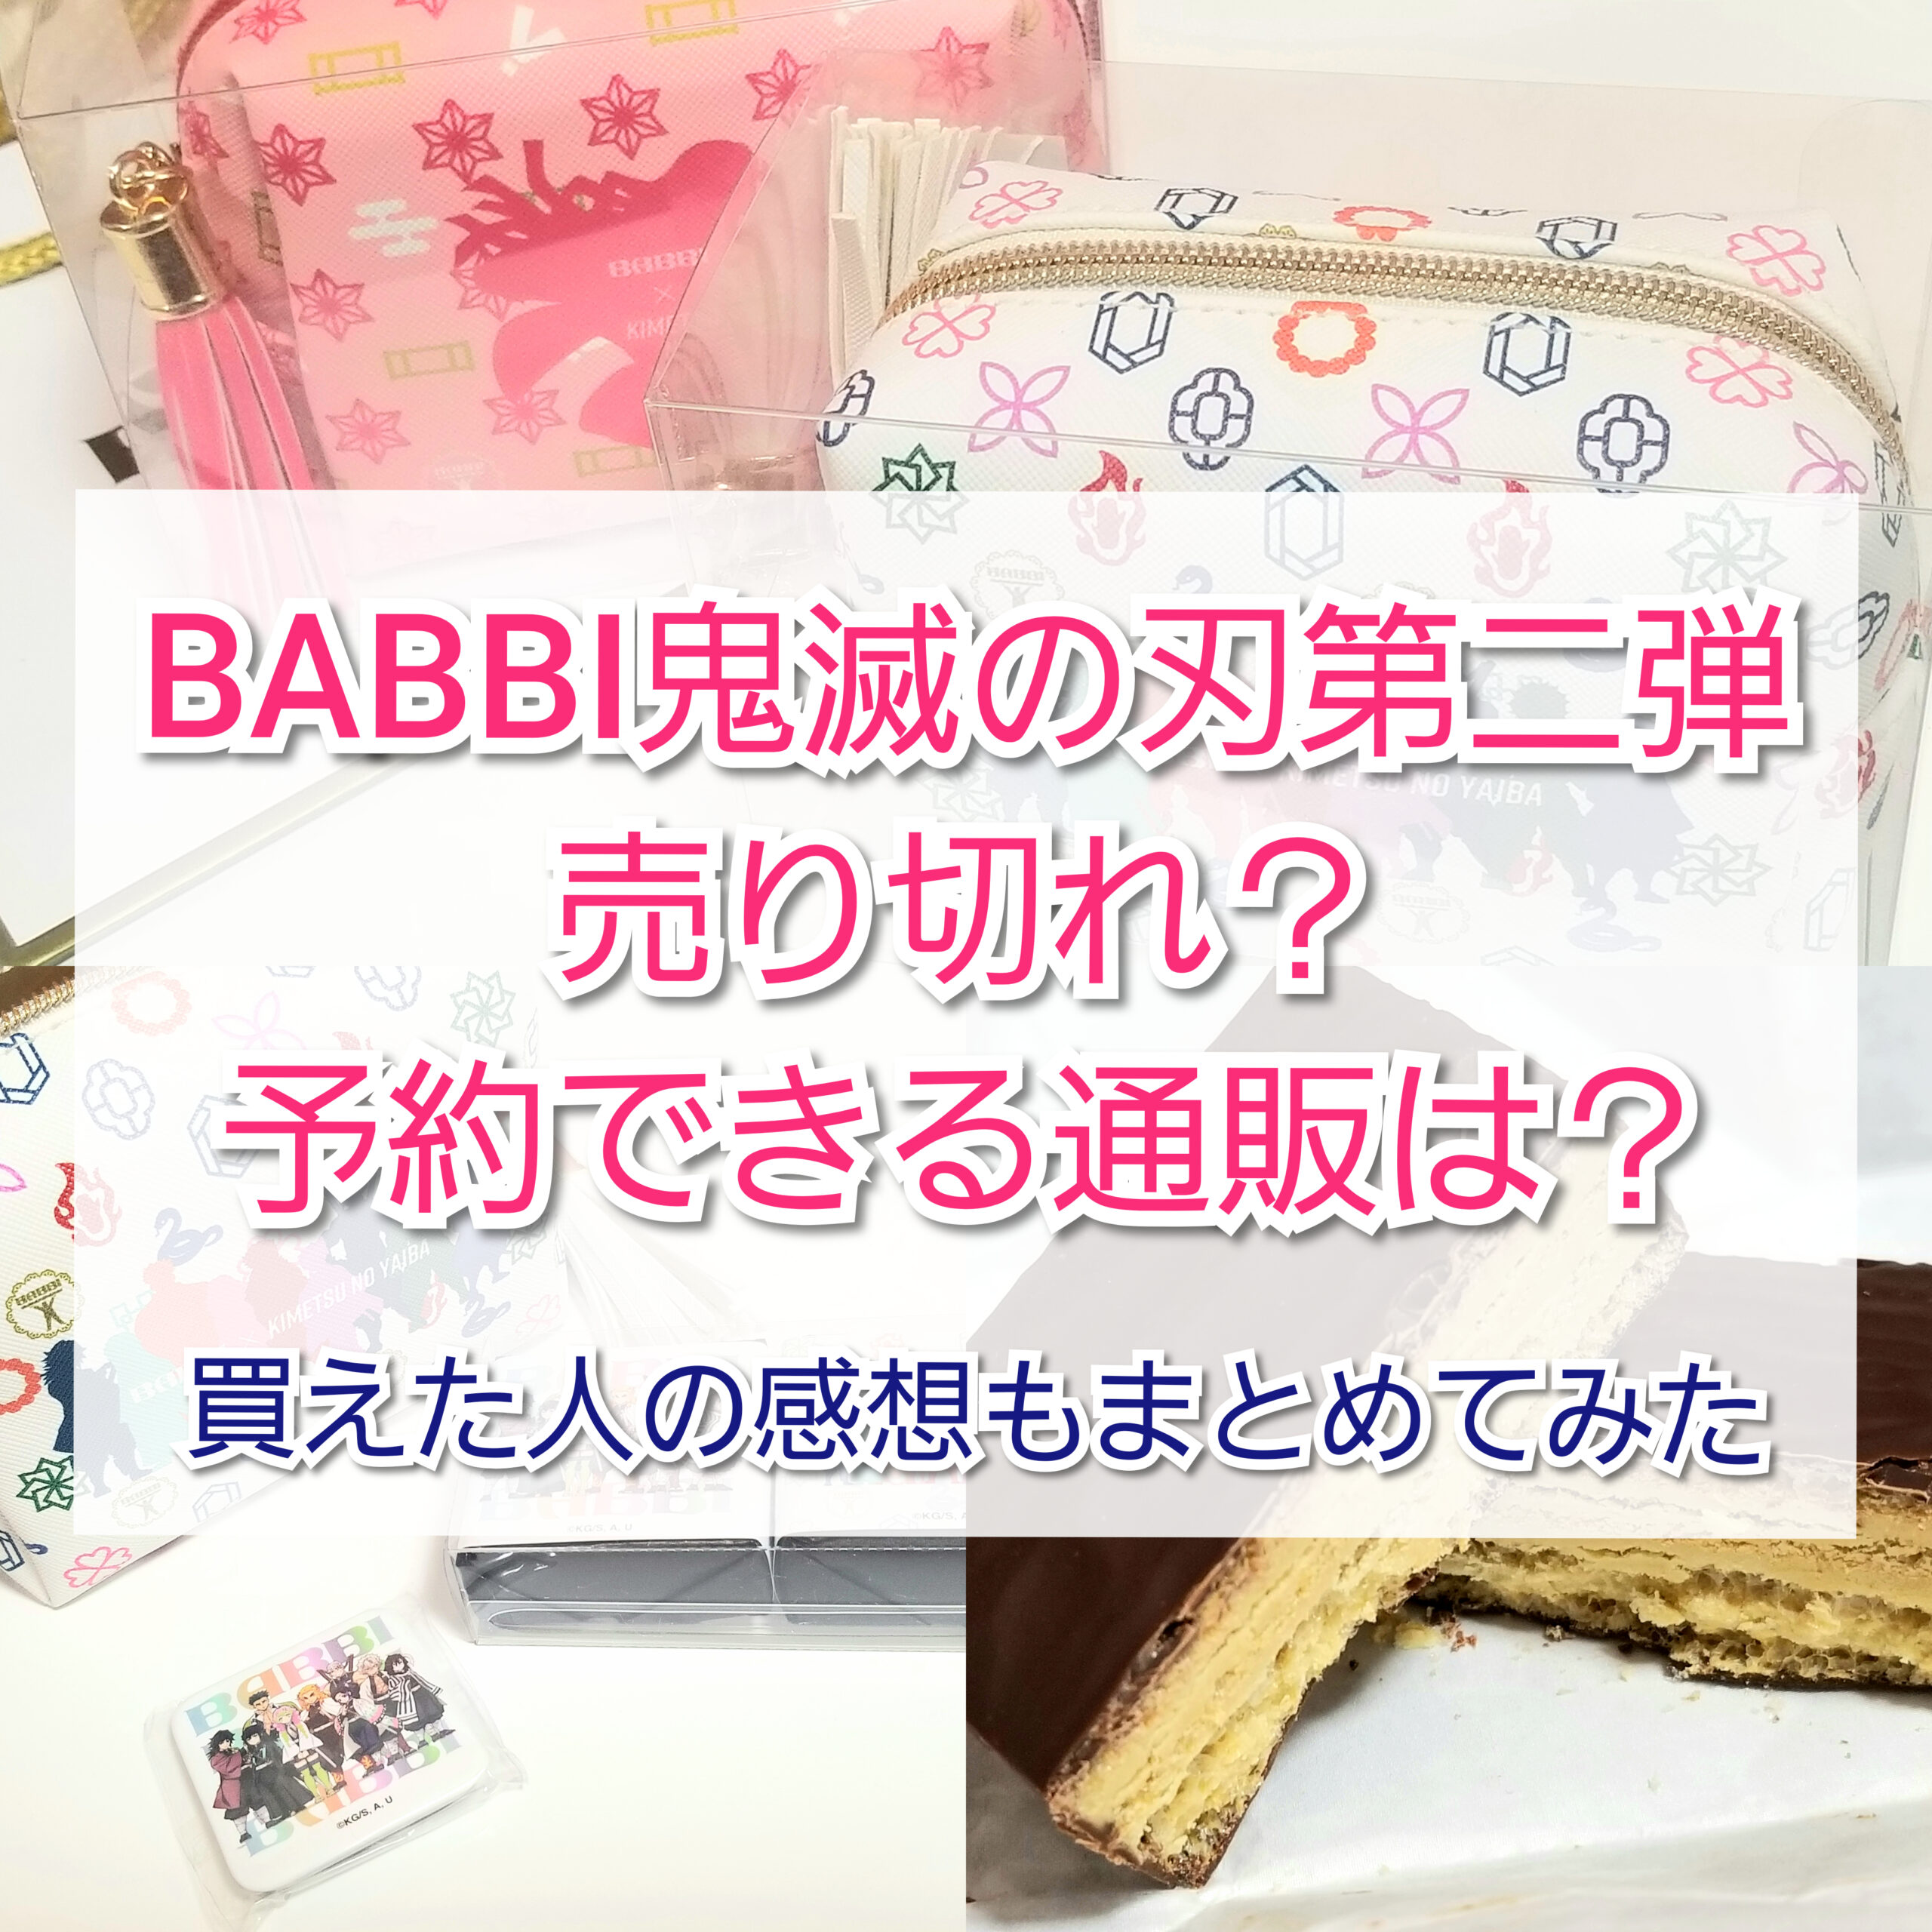 鬼滅の刃×BABBIポーチ&ミルフィーユ缶 煉獄杏寿郎